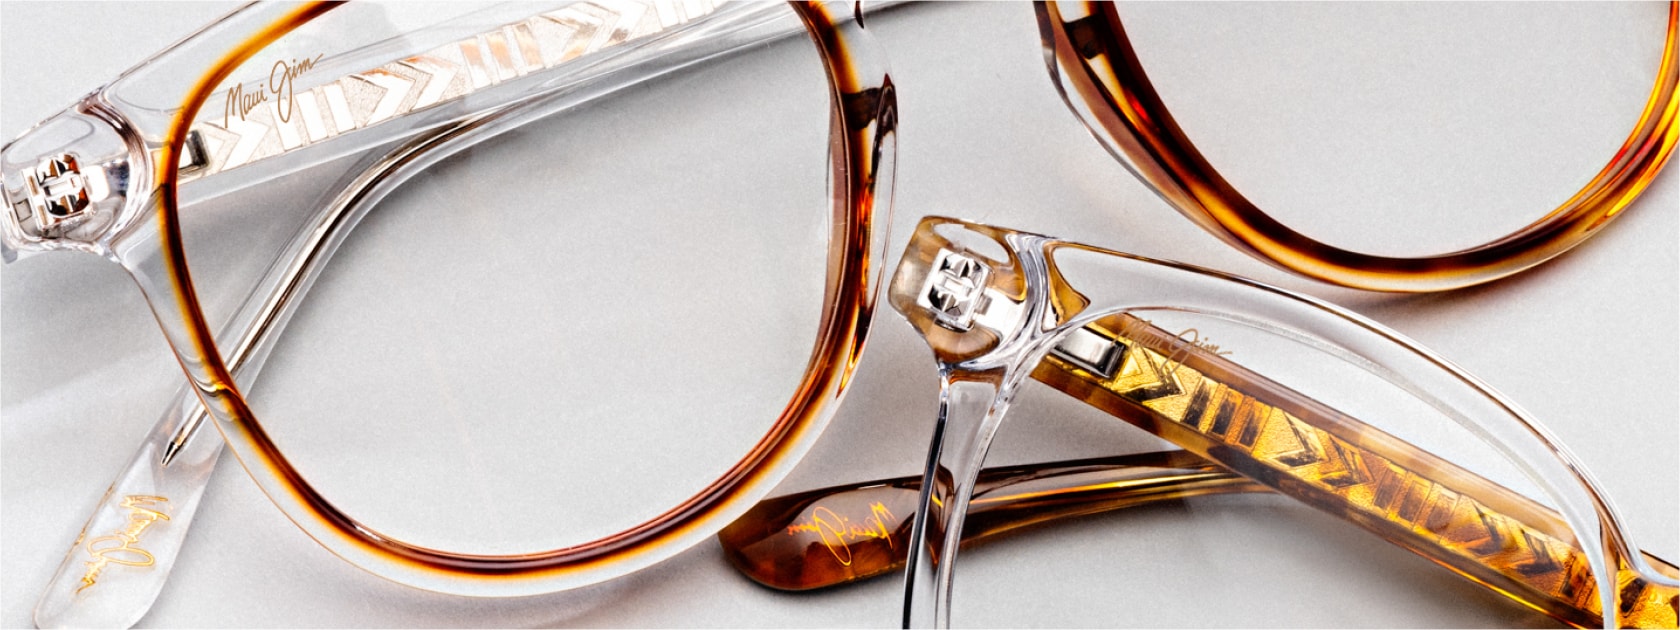 dos gafas oftálmicas de montura transparente distintas sobre fondo blanco